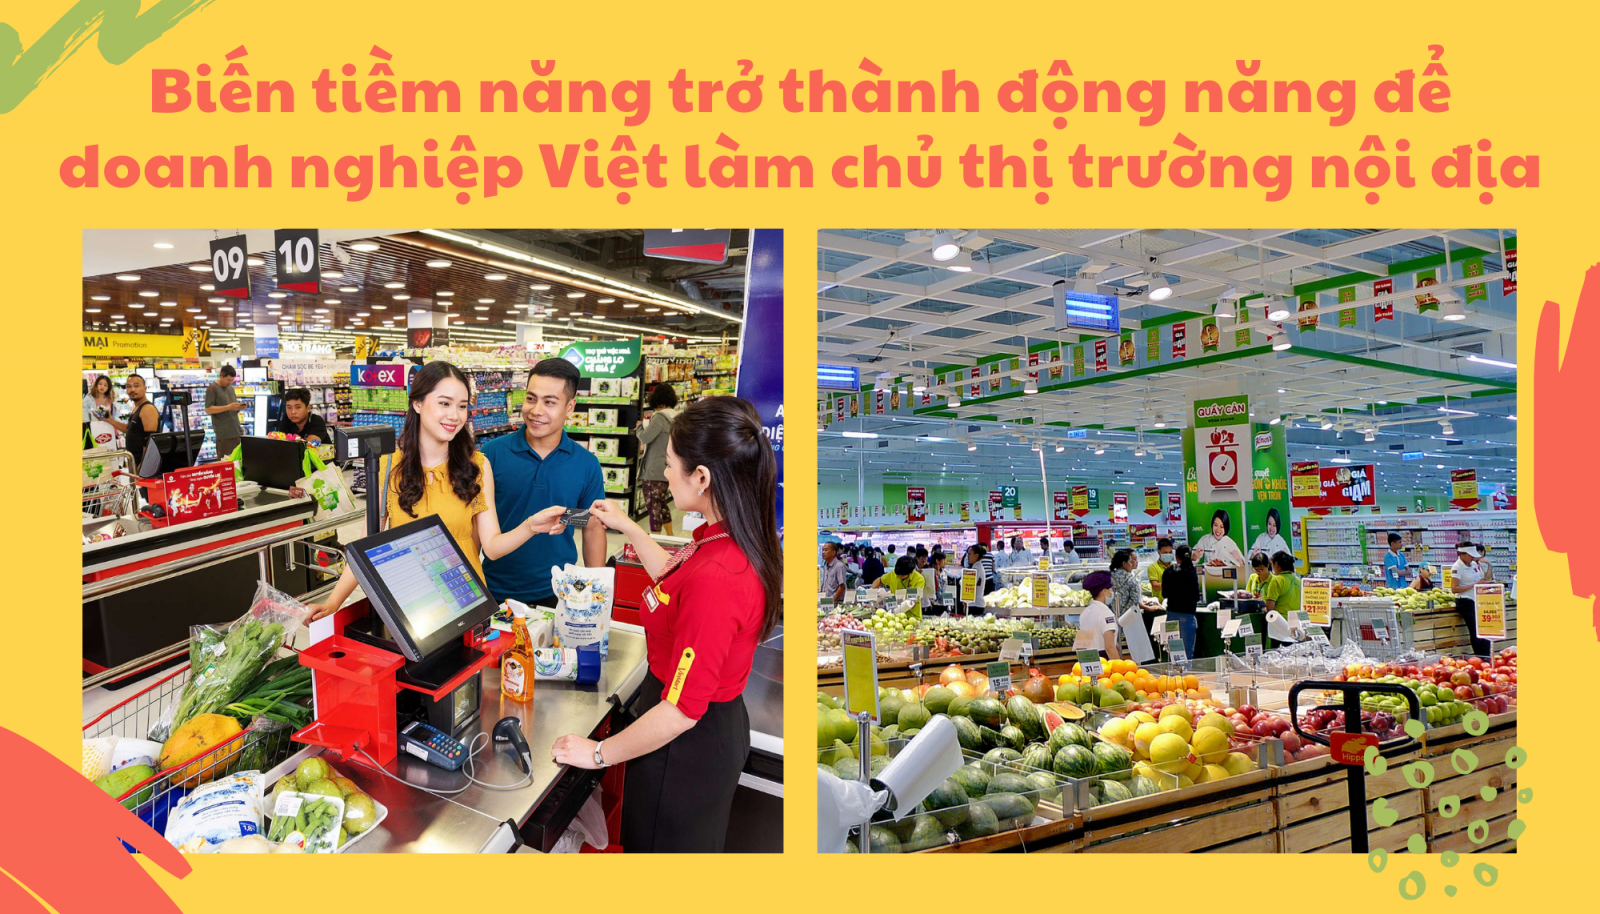 Biến tiềm năng trở thành động năng để doanh nghiệp Việt làm chủ thị trường nội địa